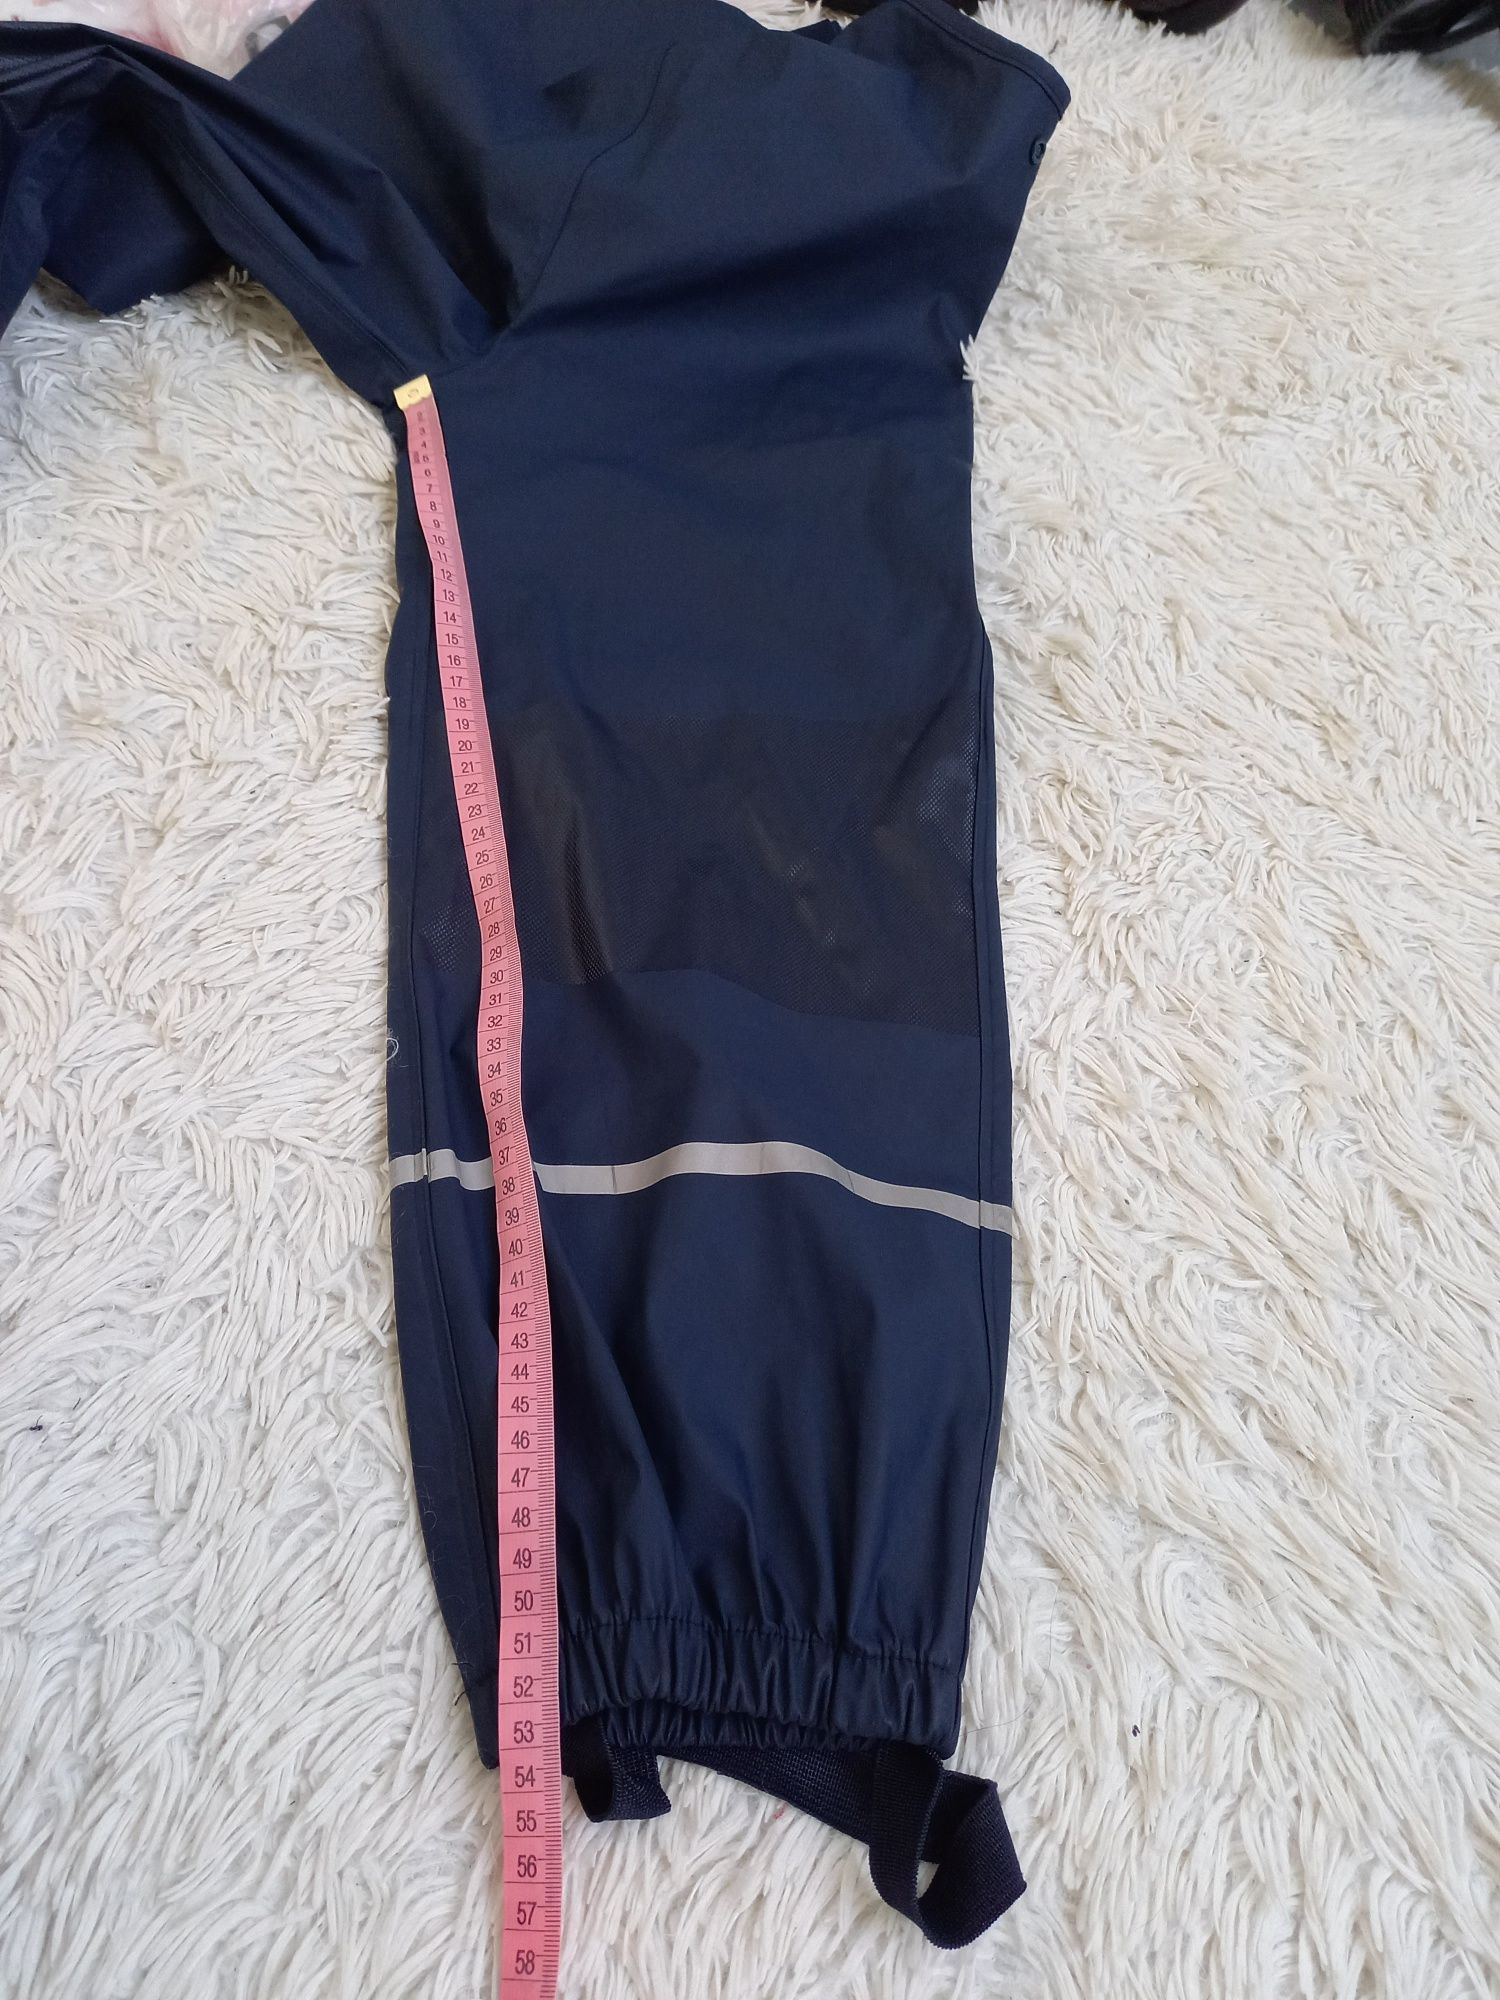 Spodnie narciarskie nieocieplone granatowe rozmiar 122/128cm (6/8lat)